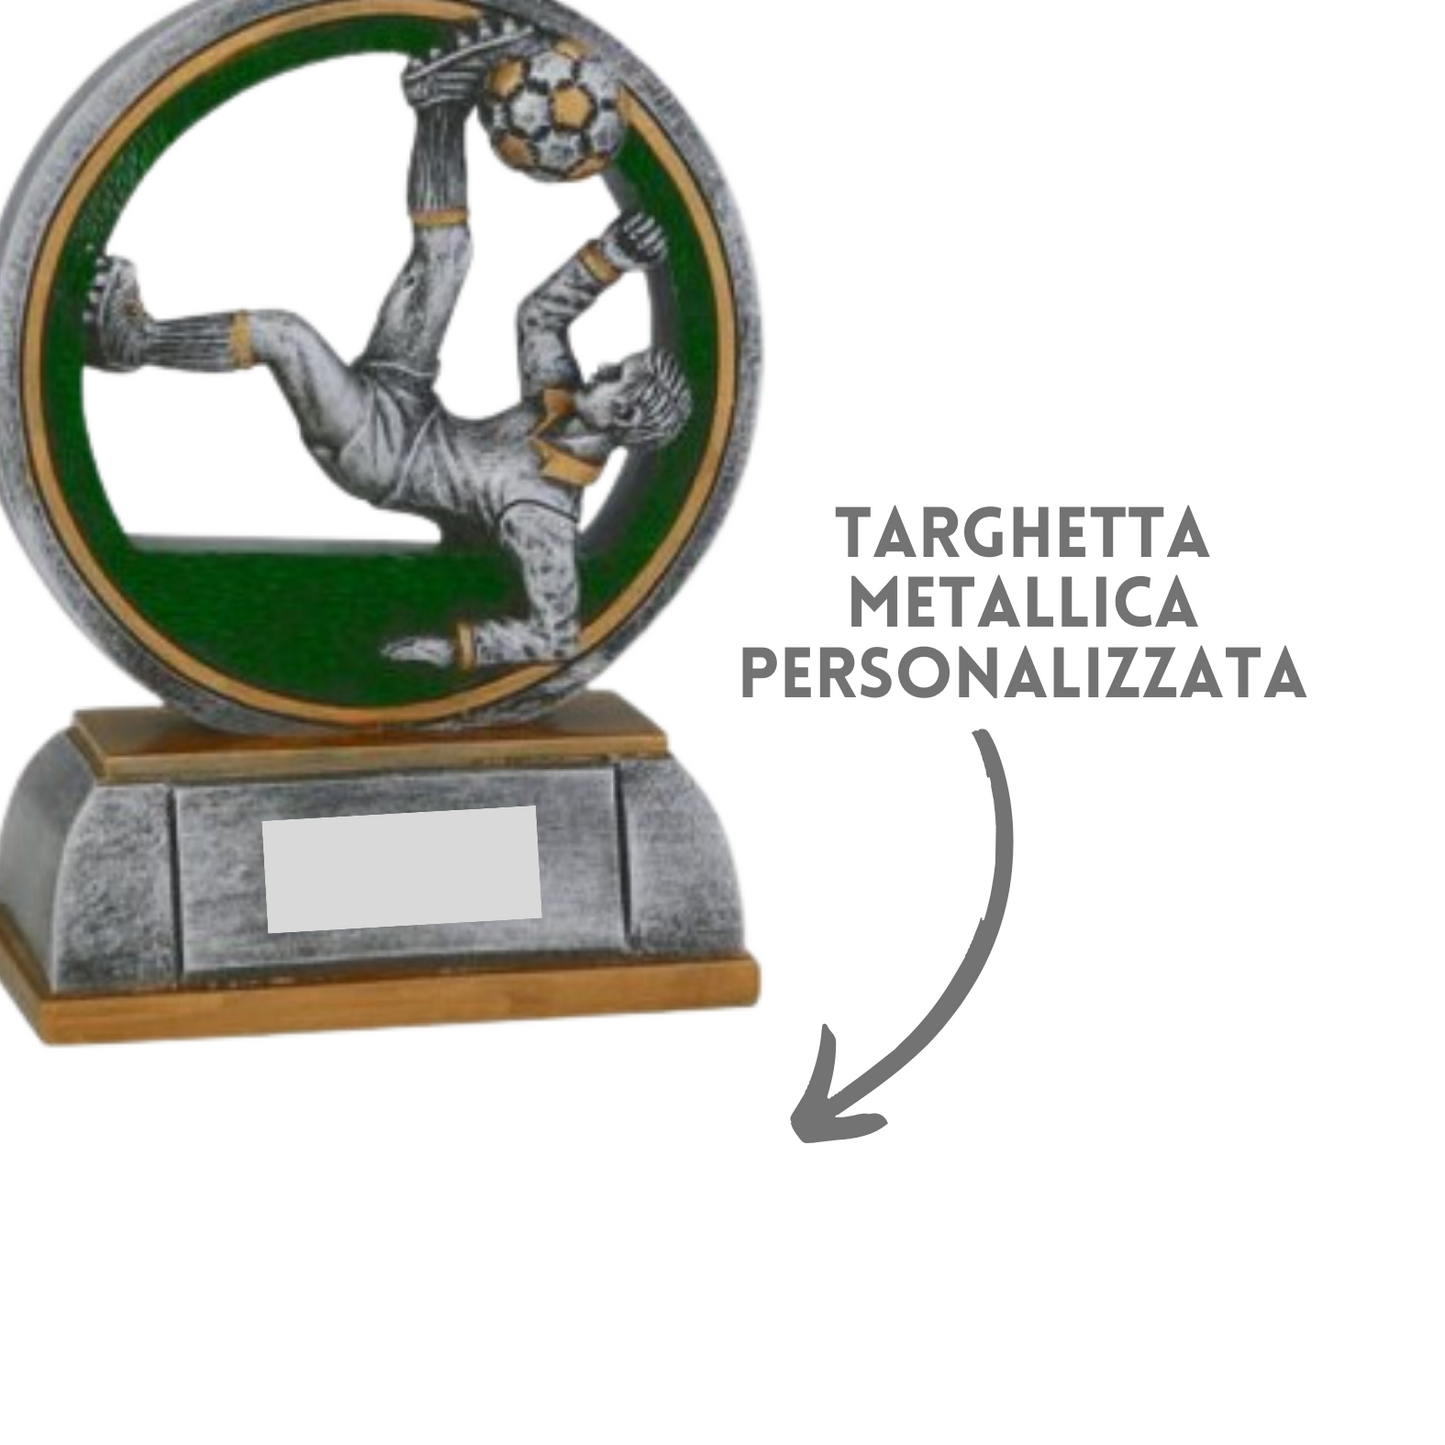 Premio calcistico da 16 cm personalizzato | Cod. 15.001